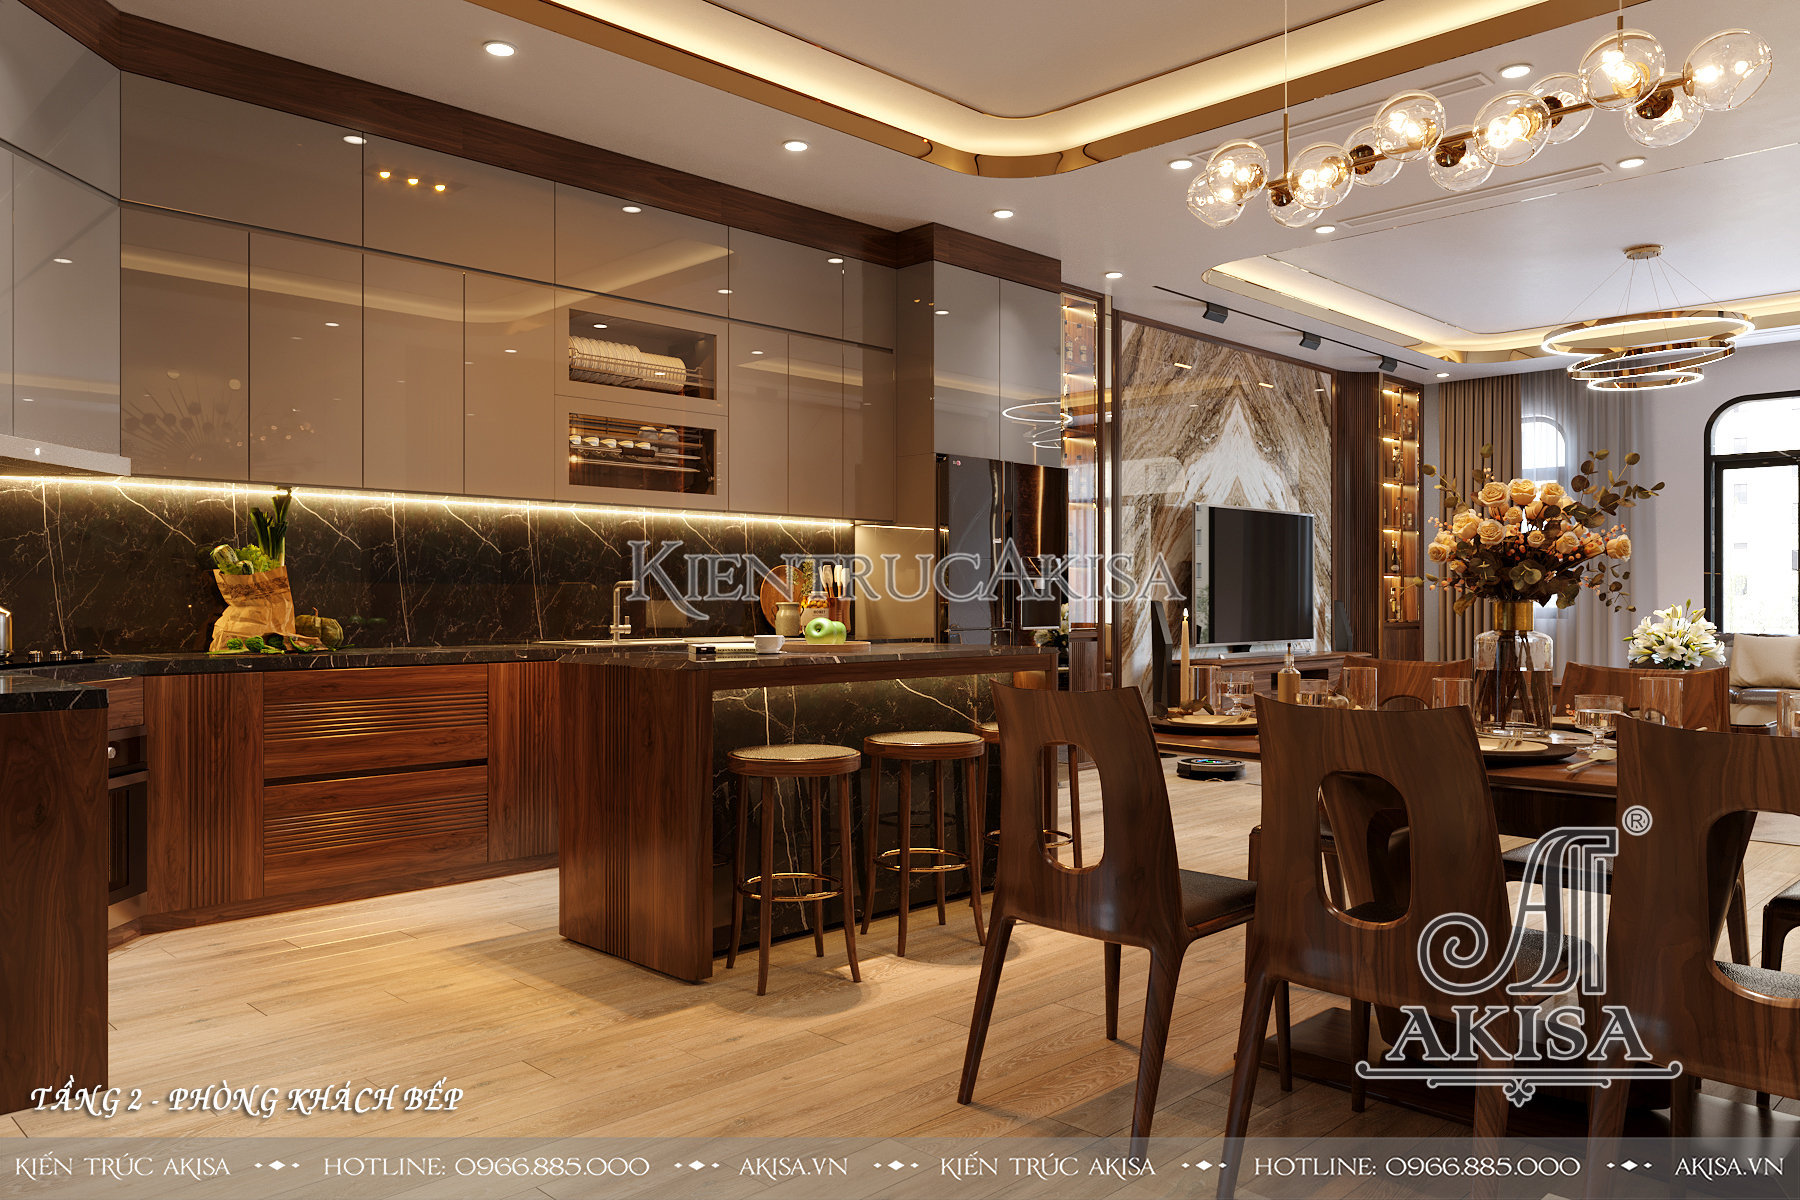 Thiết kế nội thất gỗ óc chó đẹp hiện đại - Phòng bếp ăn